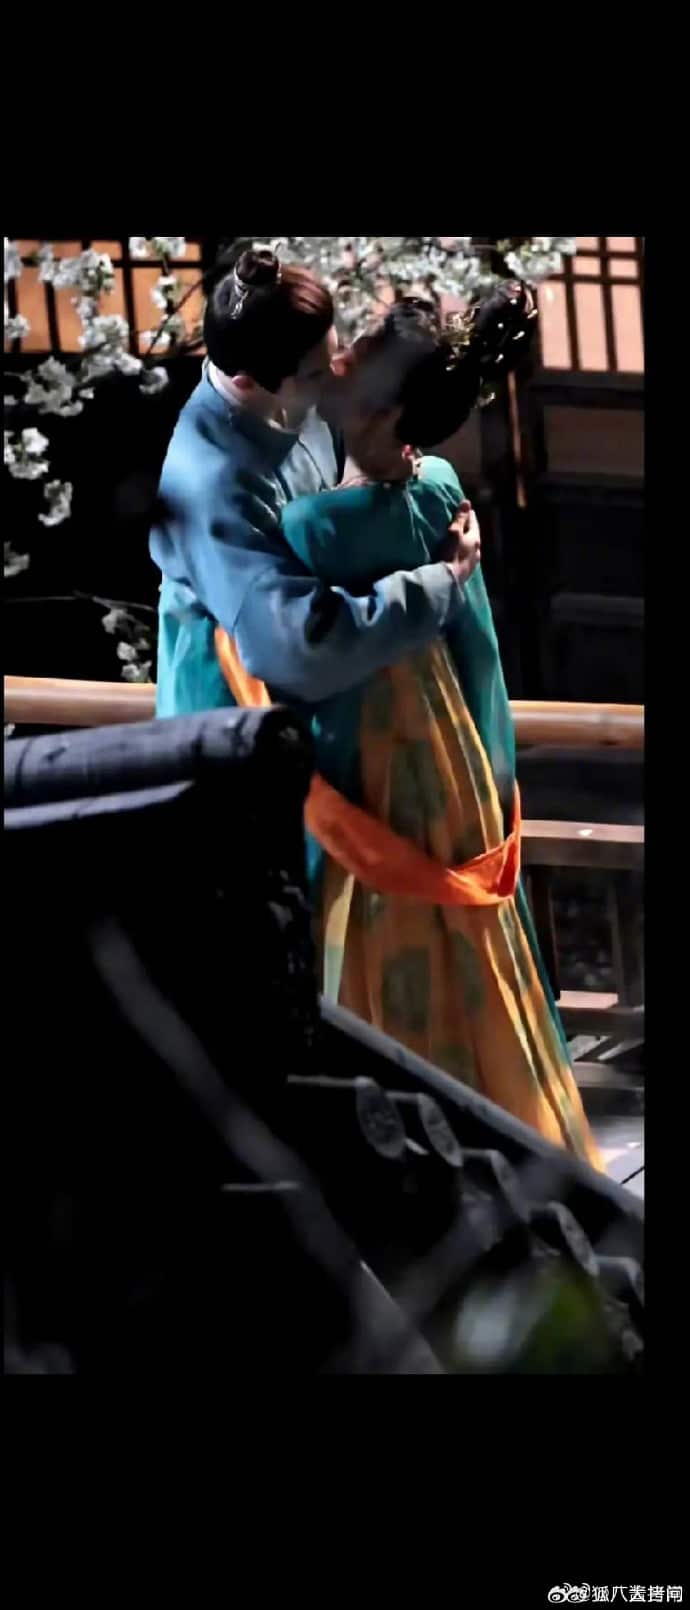 Сюй Кай и Тянь Си Вэй на съёмках сцены поцелуя дорамы "Полночное воссоединение"